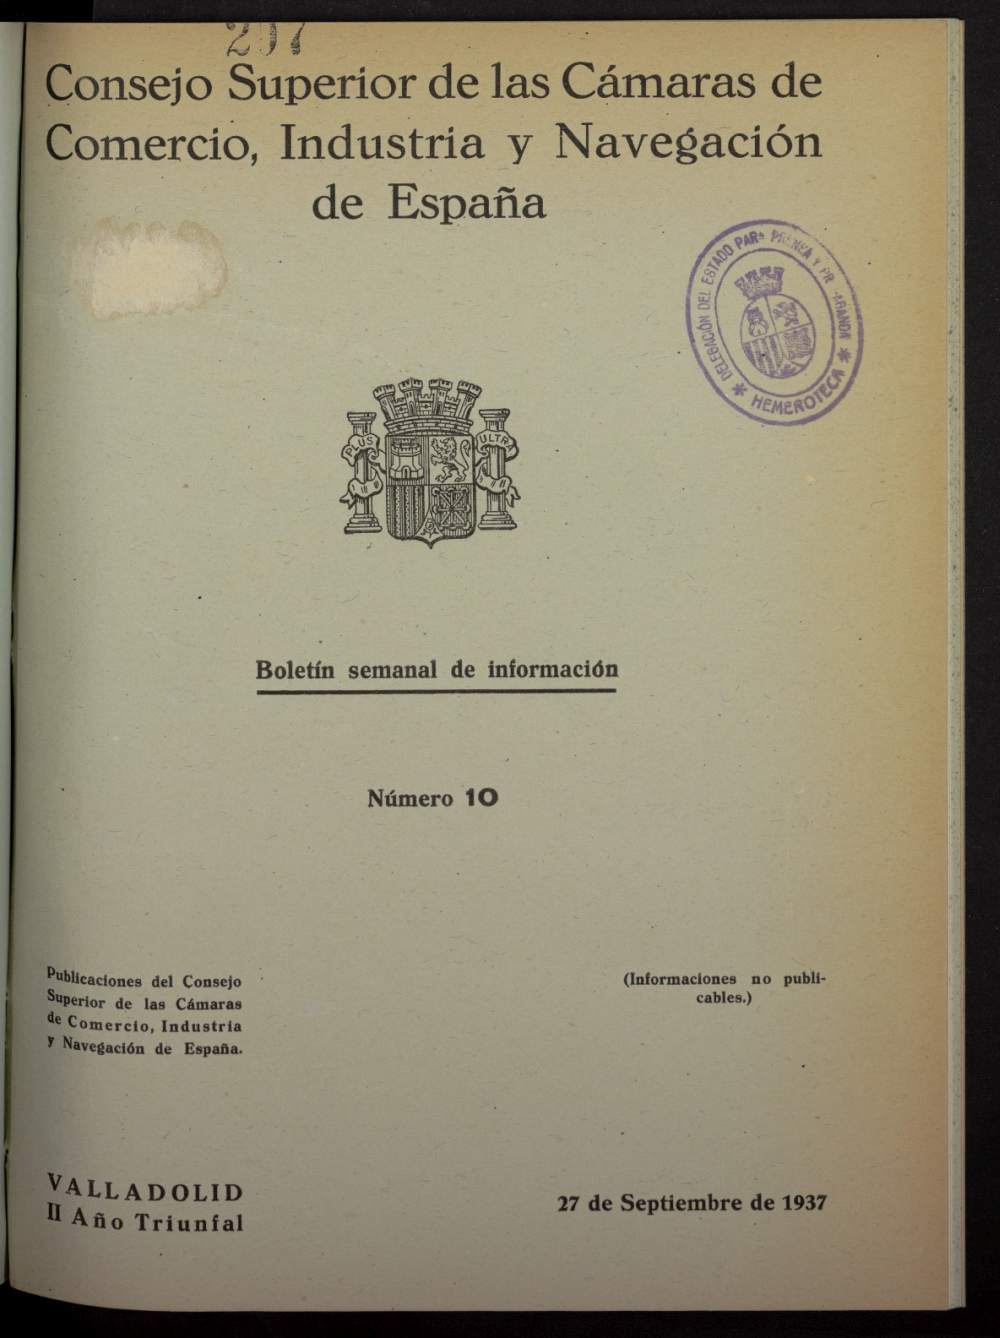 Boletín Semanal de Información. Consejo Superior de las Cámaras de Comercio de España del 27 de septiembre de 1937, nº 10